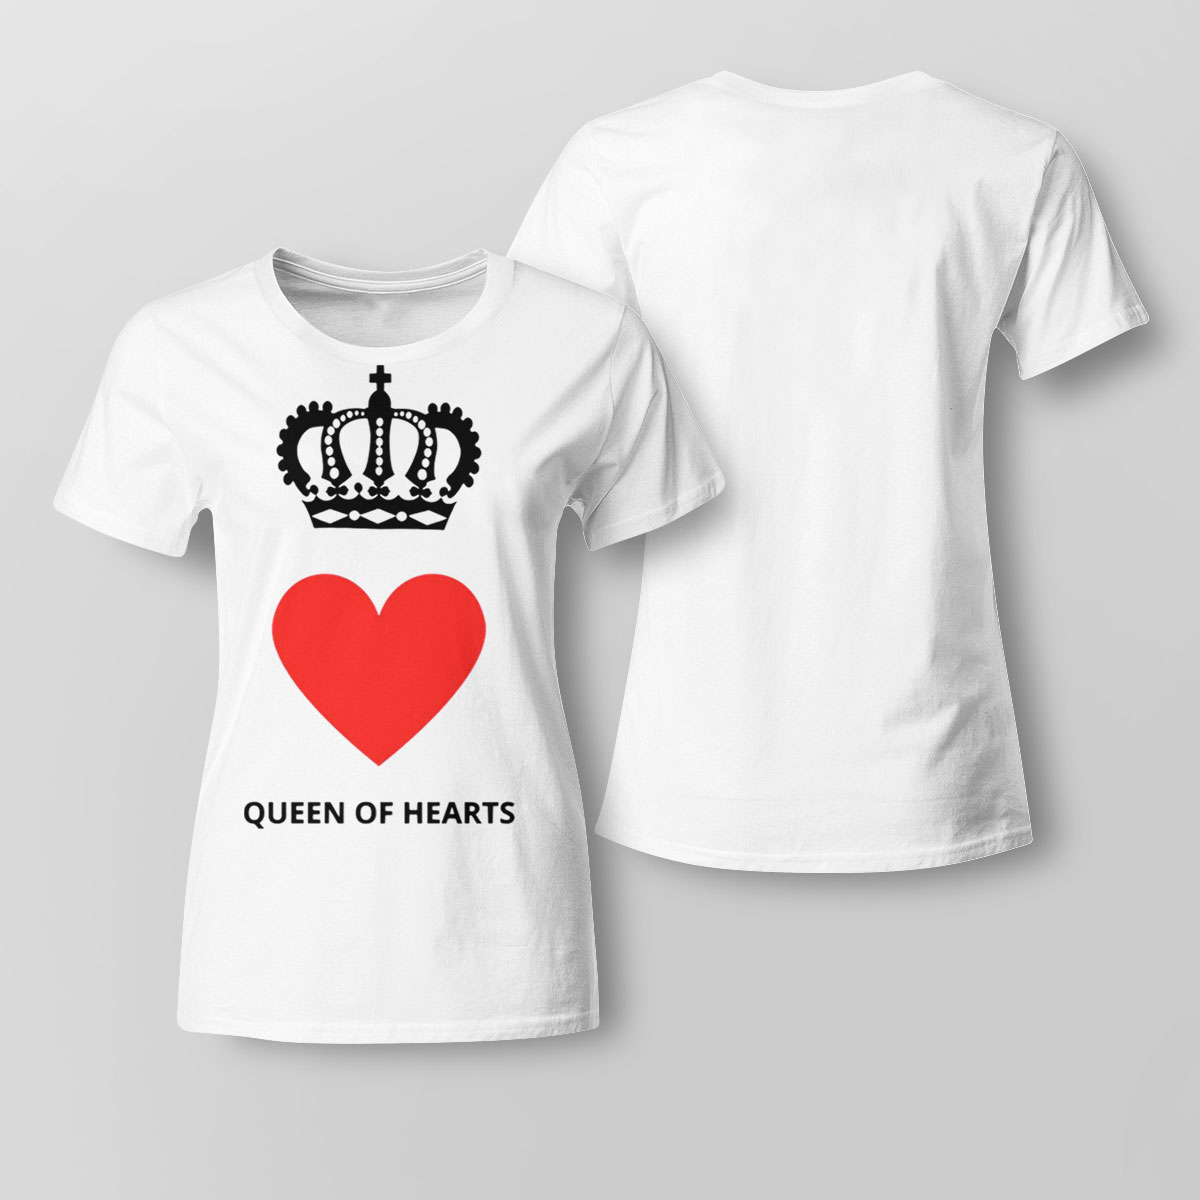 Qoh Queens Of Heart The Thrown Queen Elizabeth Ii Shirt Long Sleeve, Ladies Tee